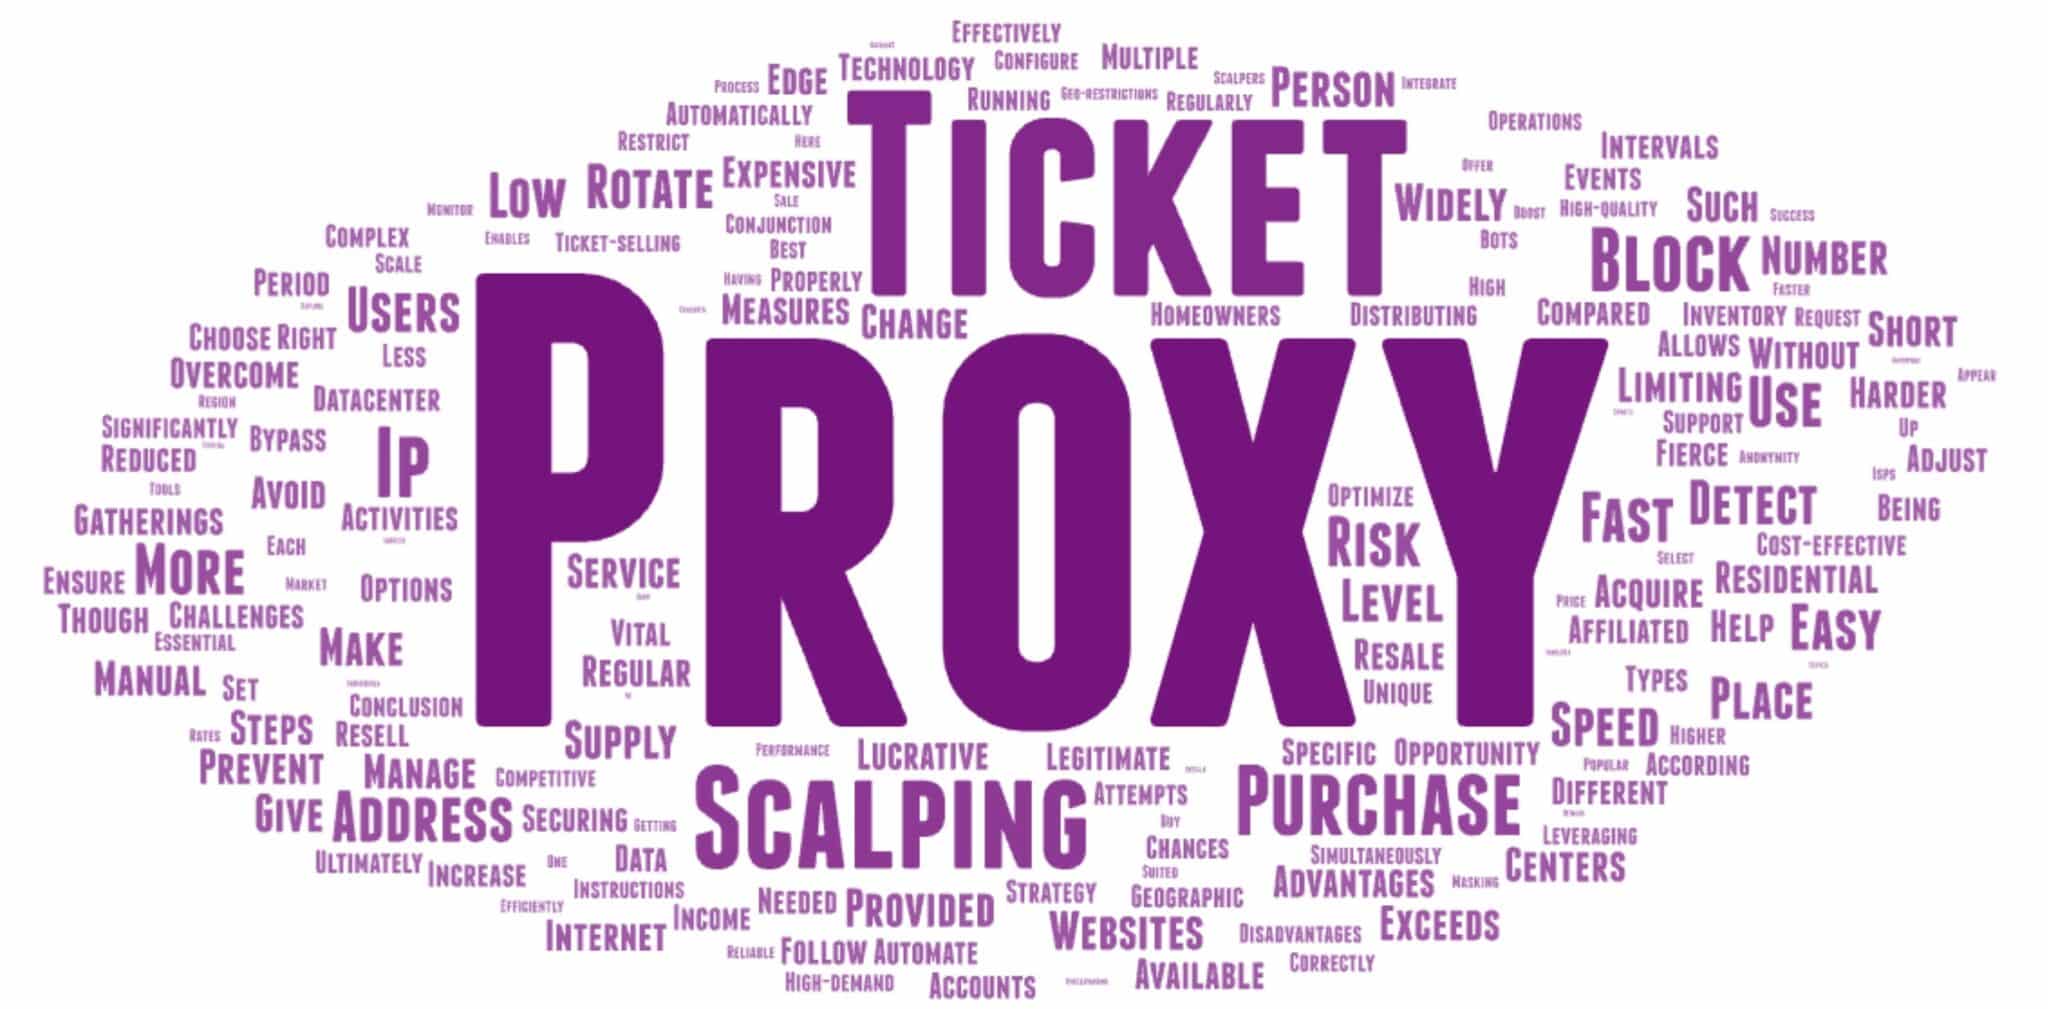 Які типи проксі найкраще підходять для скальпування квитків і як це може збільшити ваш дохід?